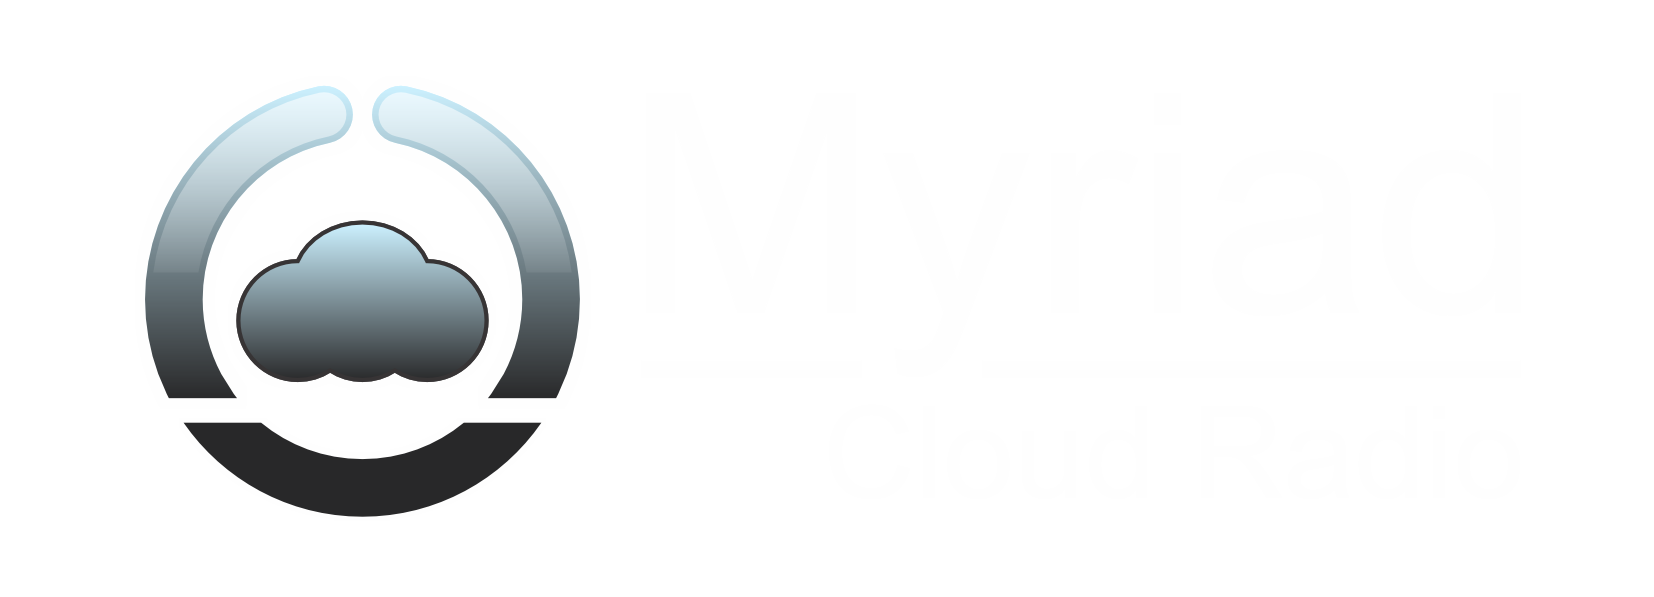 Myriad Cloud